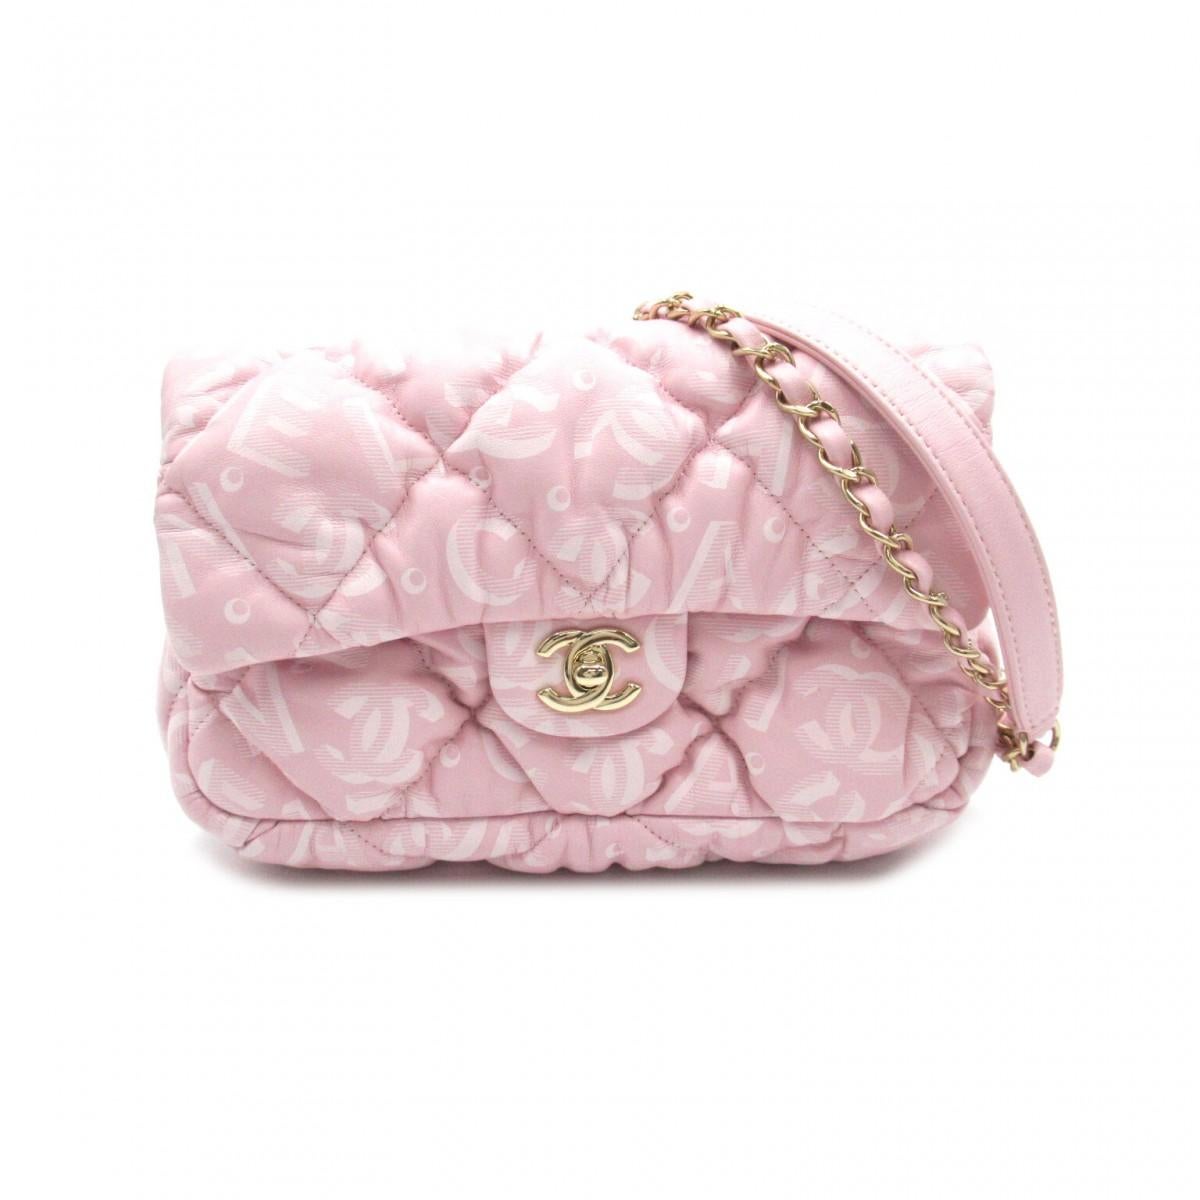 Ce sac à bandoulière Chanel est réalisé en cuir d'agneau doux et matelassé, avec le nom et le logo Chanel imprimés sur l'extérieur. Le sac est doté d'un métal doré clair, d'une bandoulière en métal et en cuir d'agneau rose et d'une fermeture